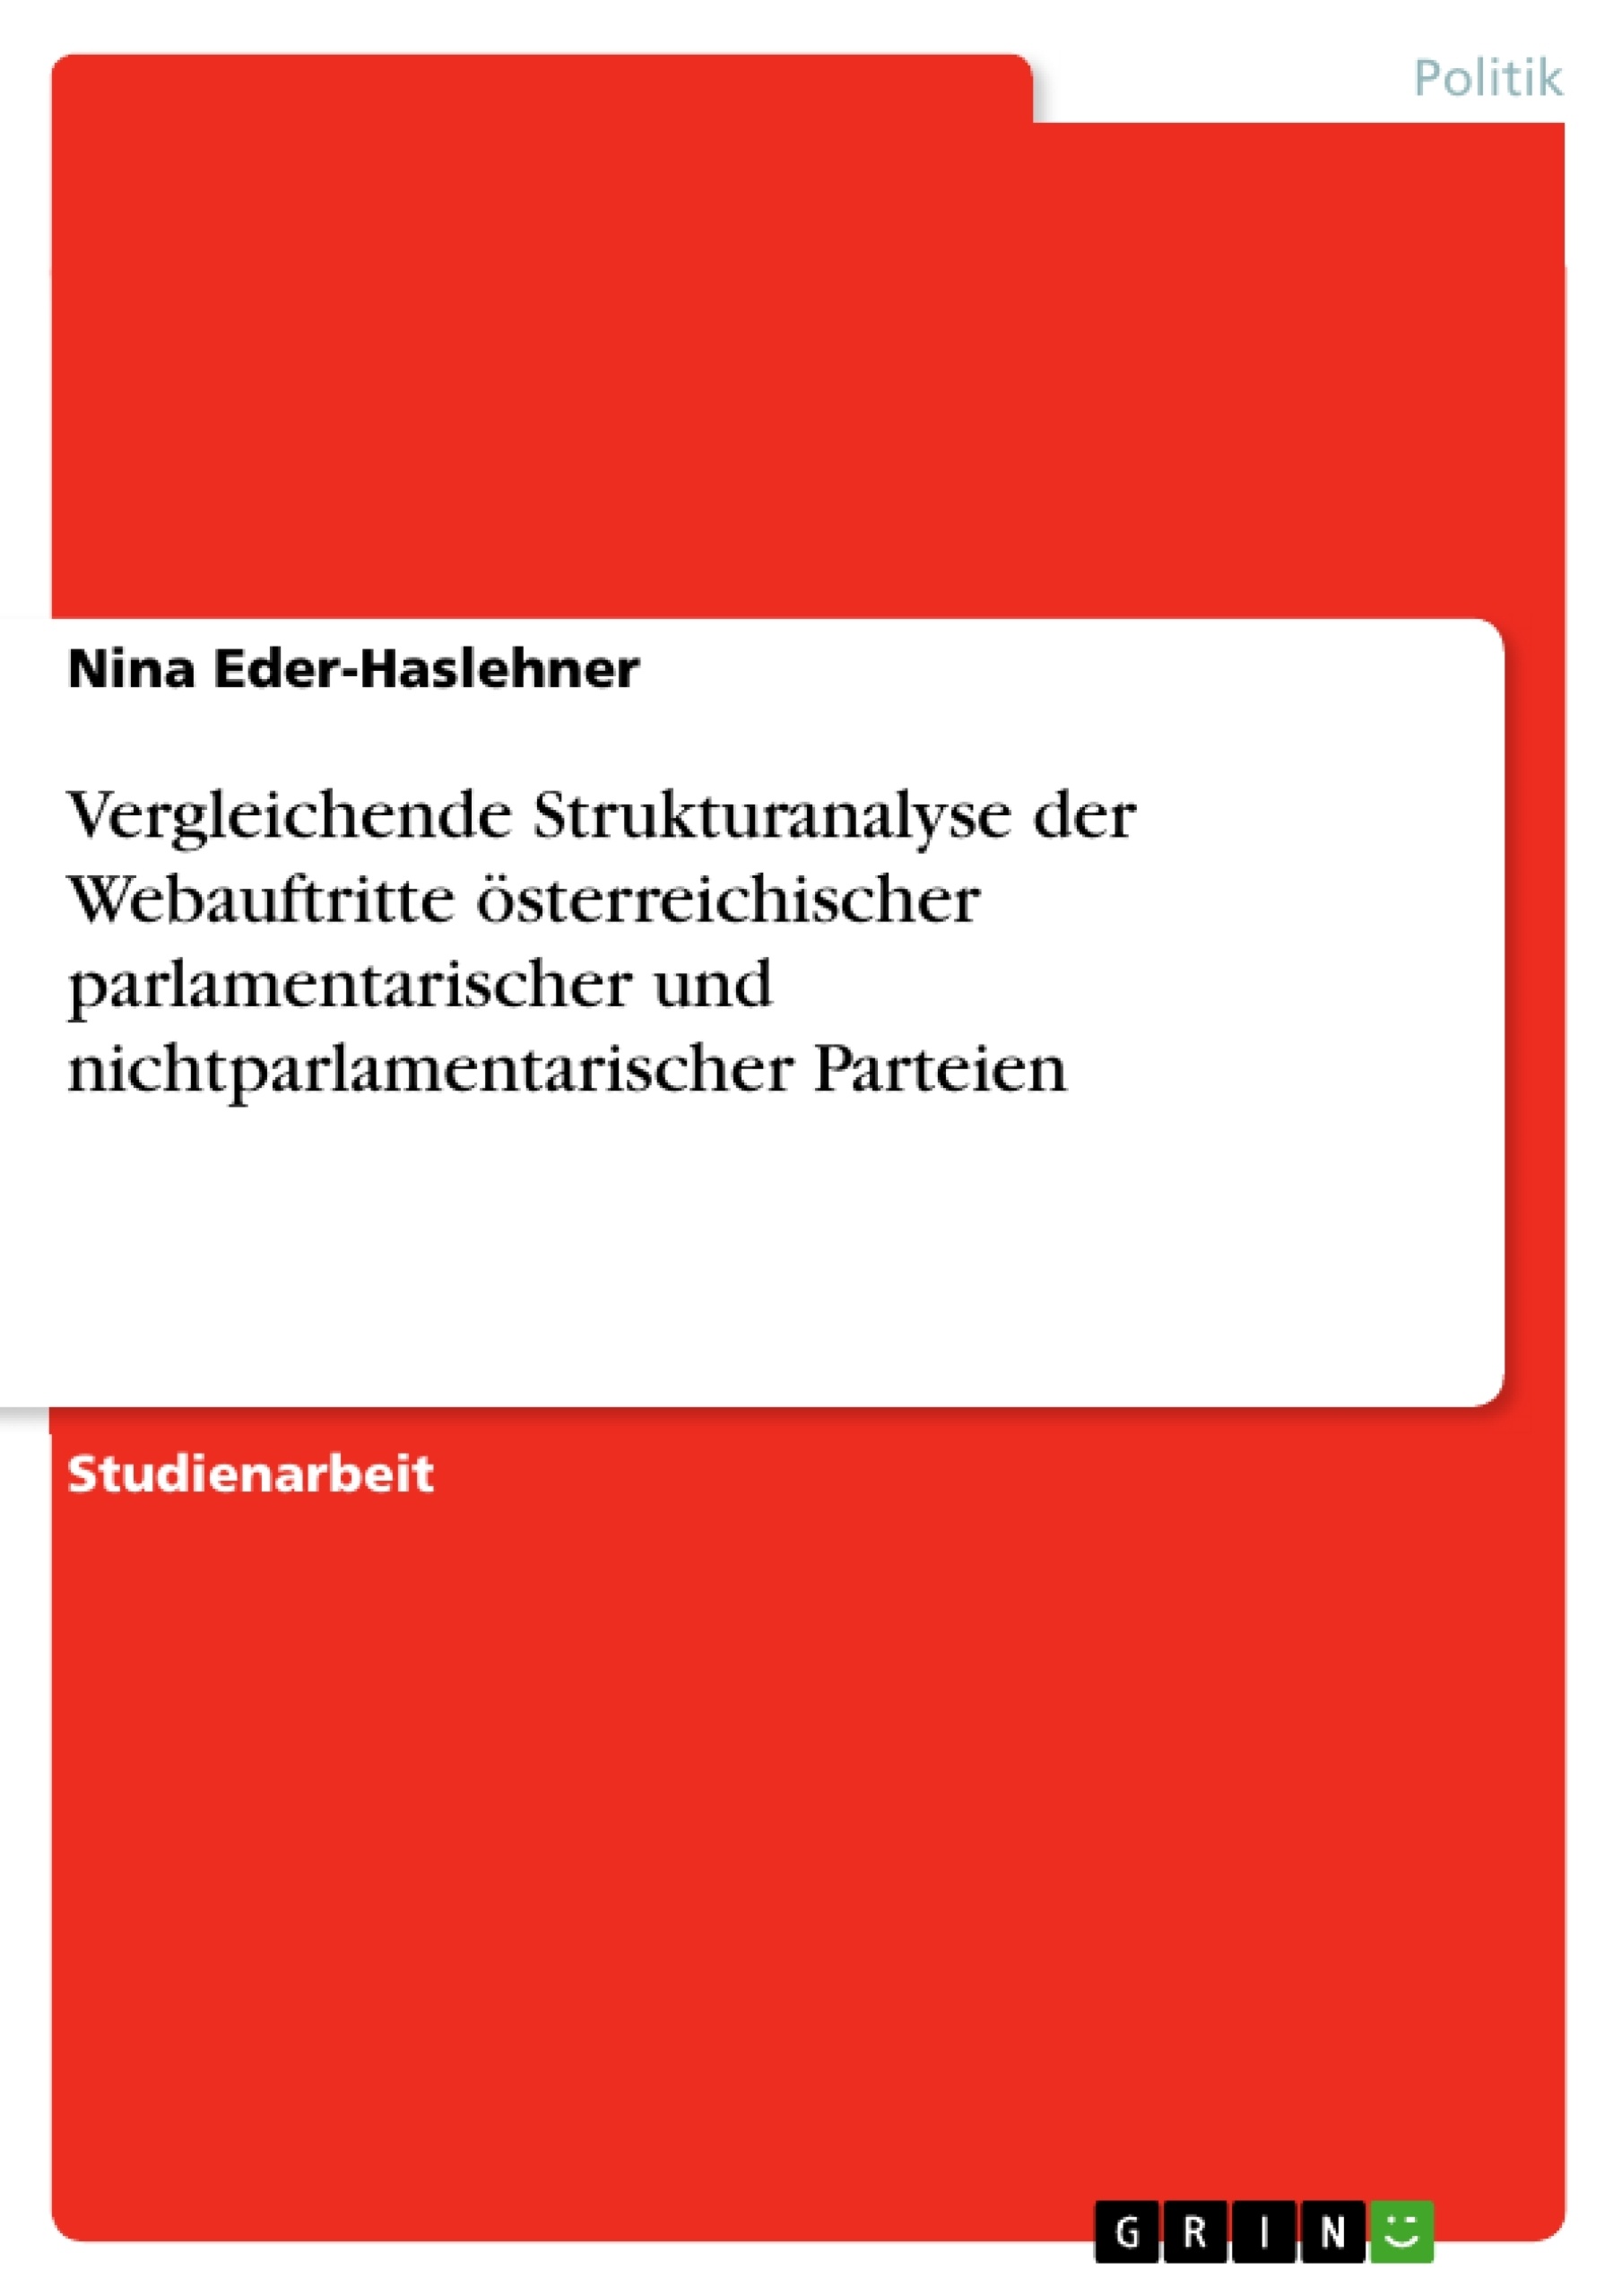 Title: Vergleichende Strukturanalyse der Webauftritte österreichischer parlamentarischer und nichtparlamentarischer Parteien